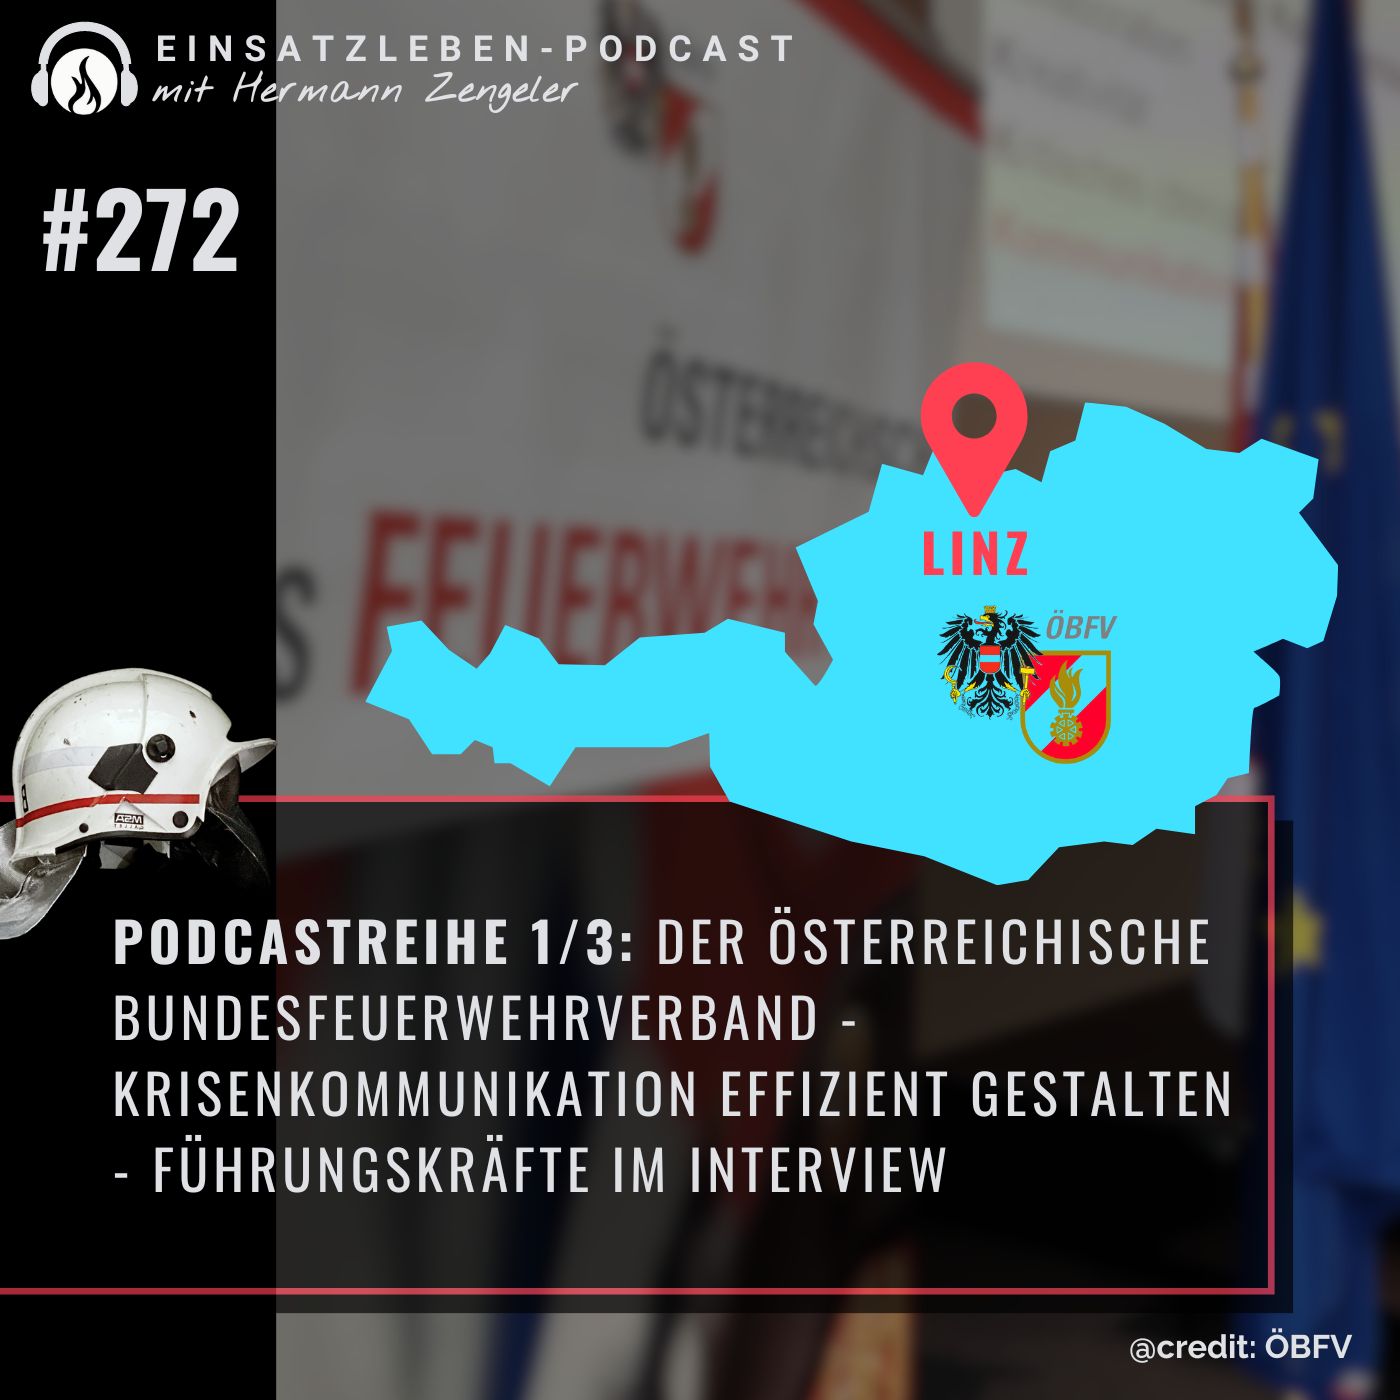 Podcastreihe 1/3: Der Österreichische Bundesfeuerwehrverband - Krisenkommunikation effizient gestalten